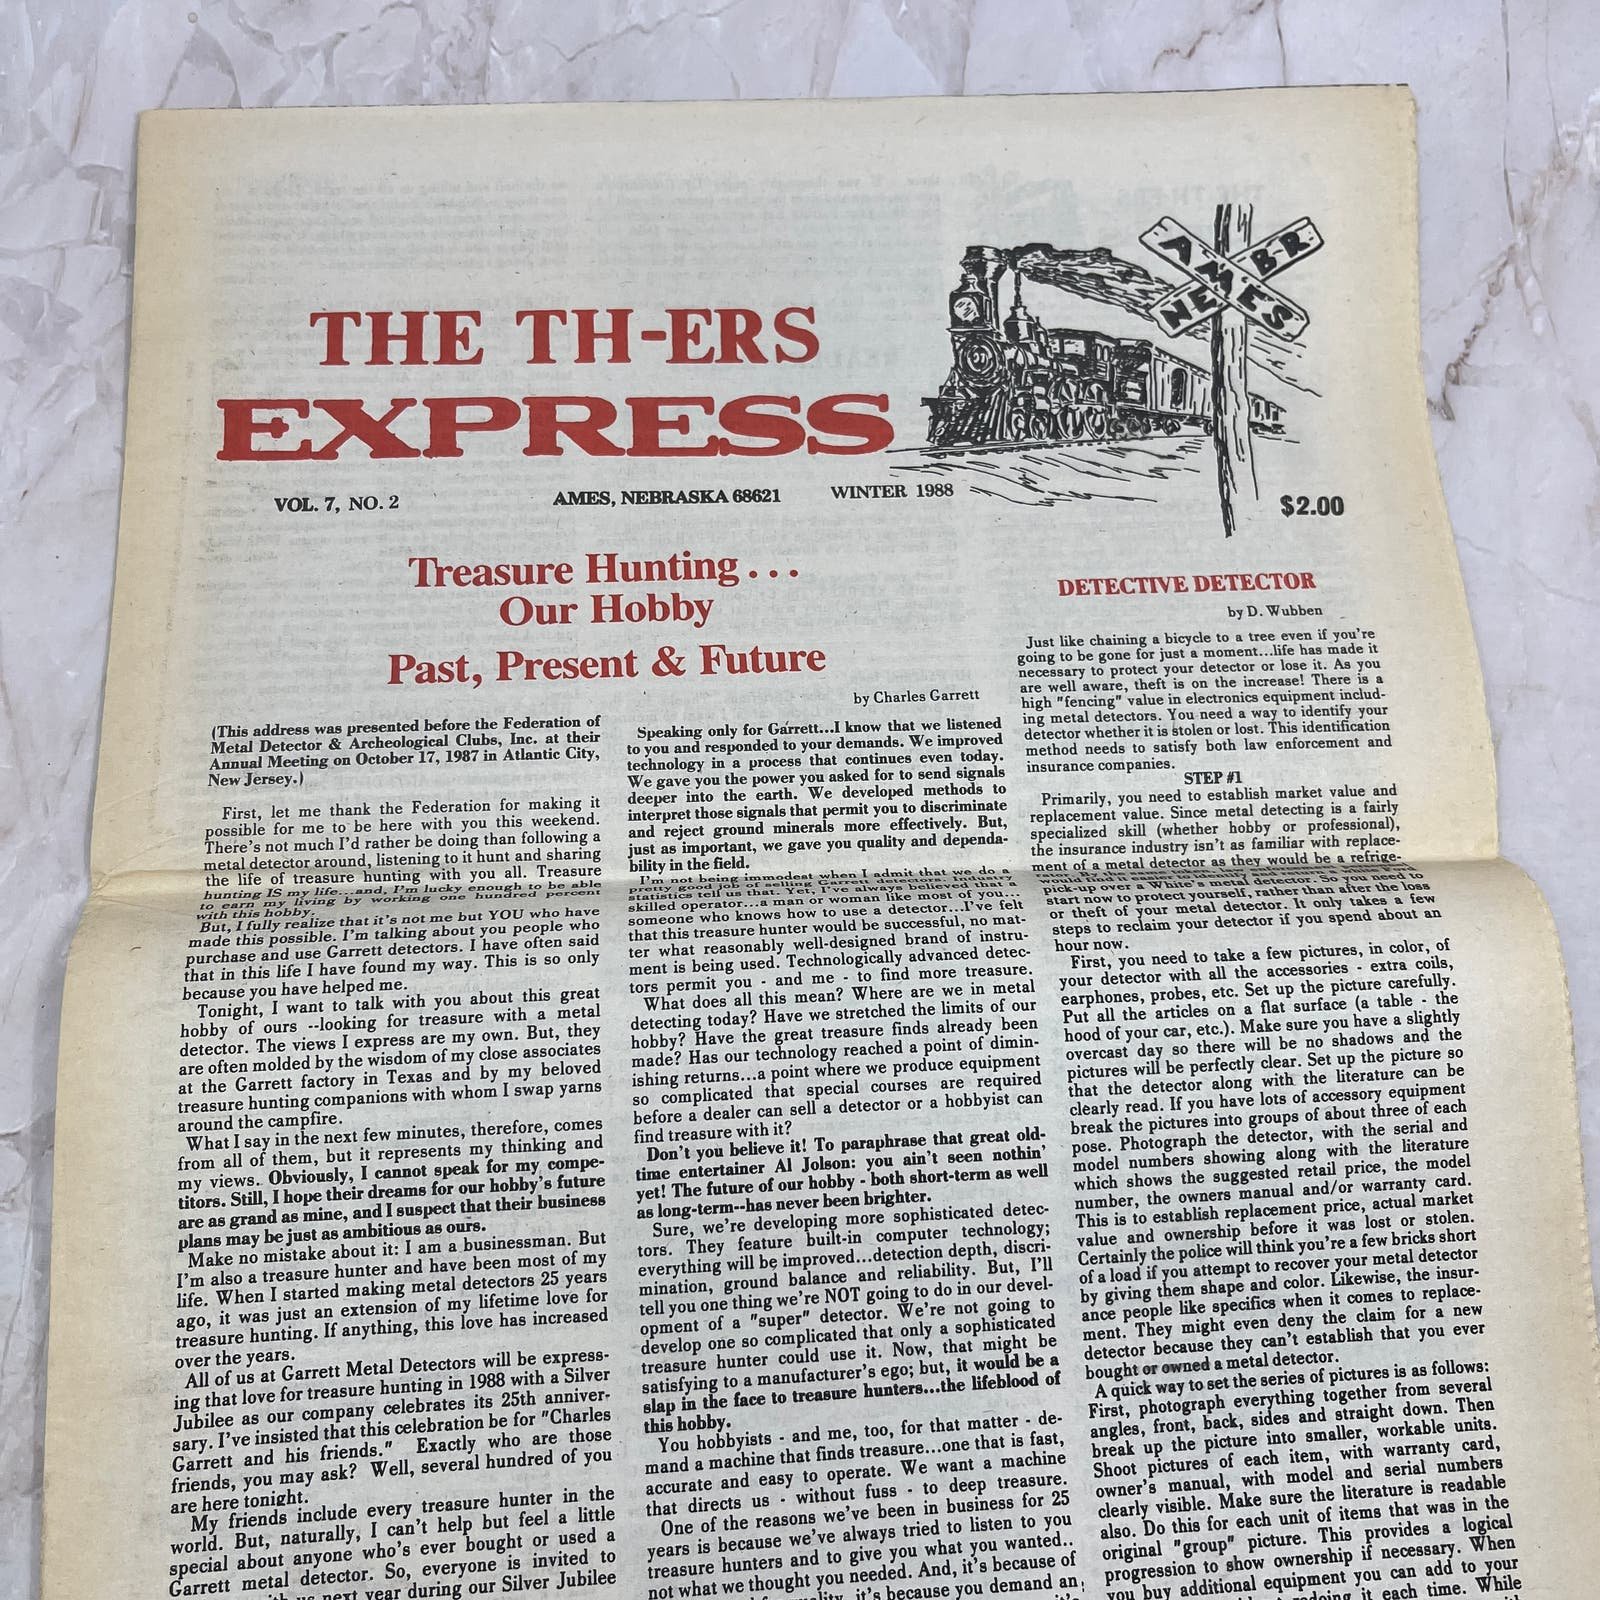 1988 Vol 7 No 2 TH-ers Express Treasure Hunting Newspap